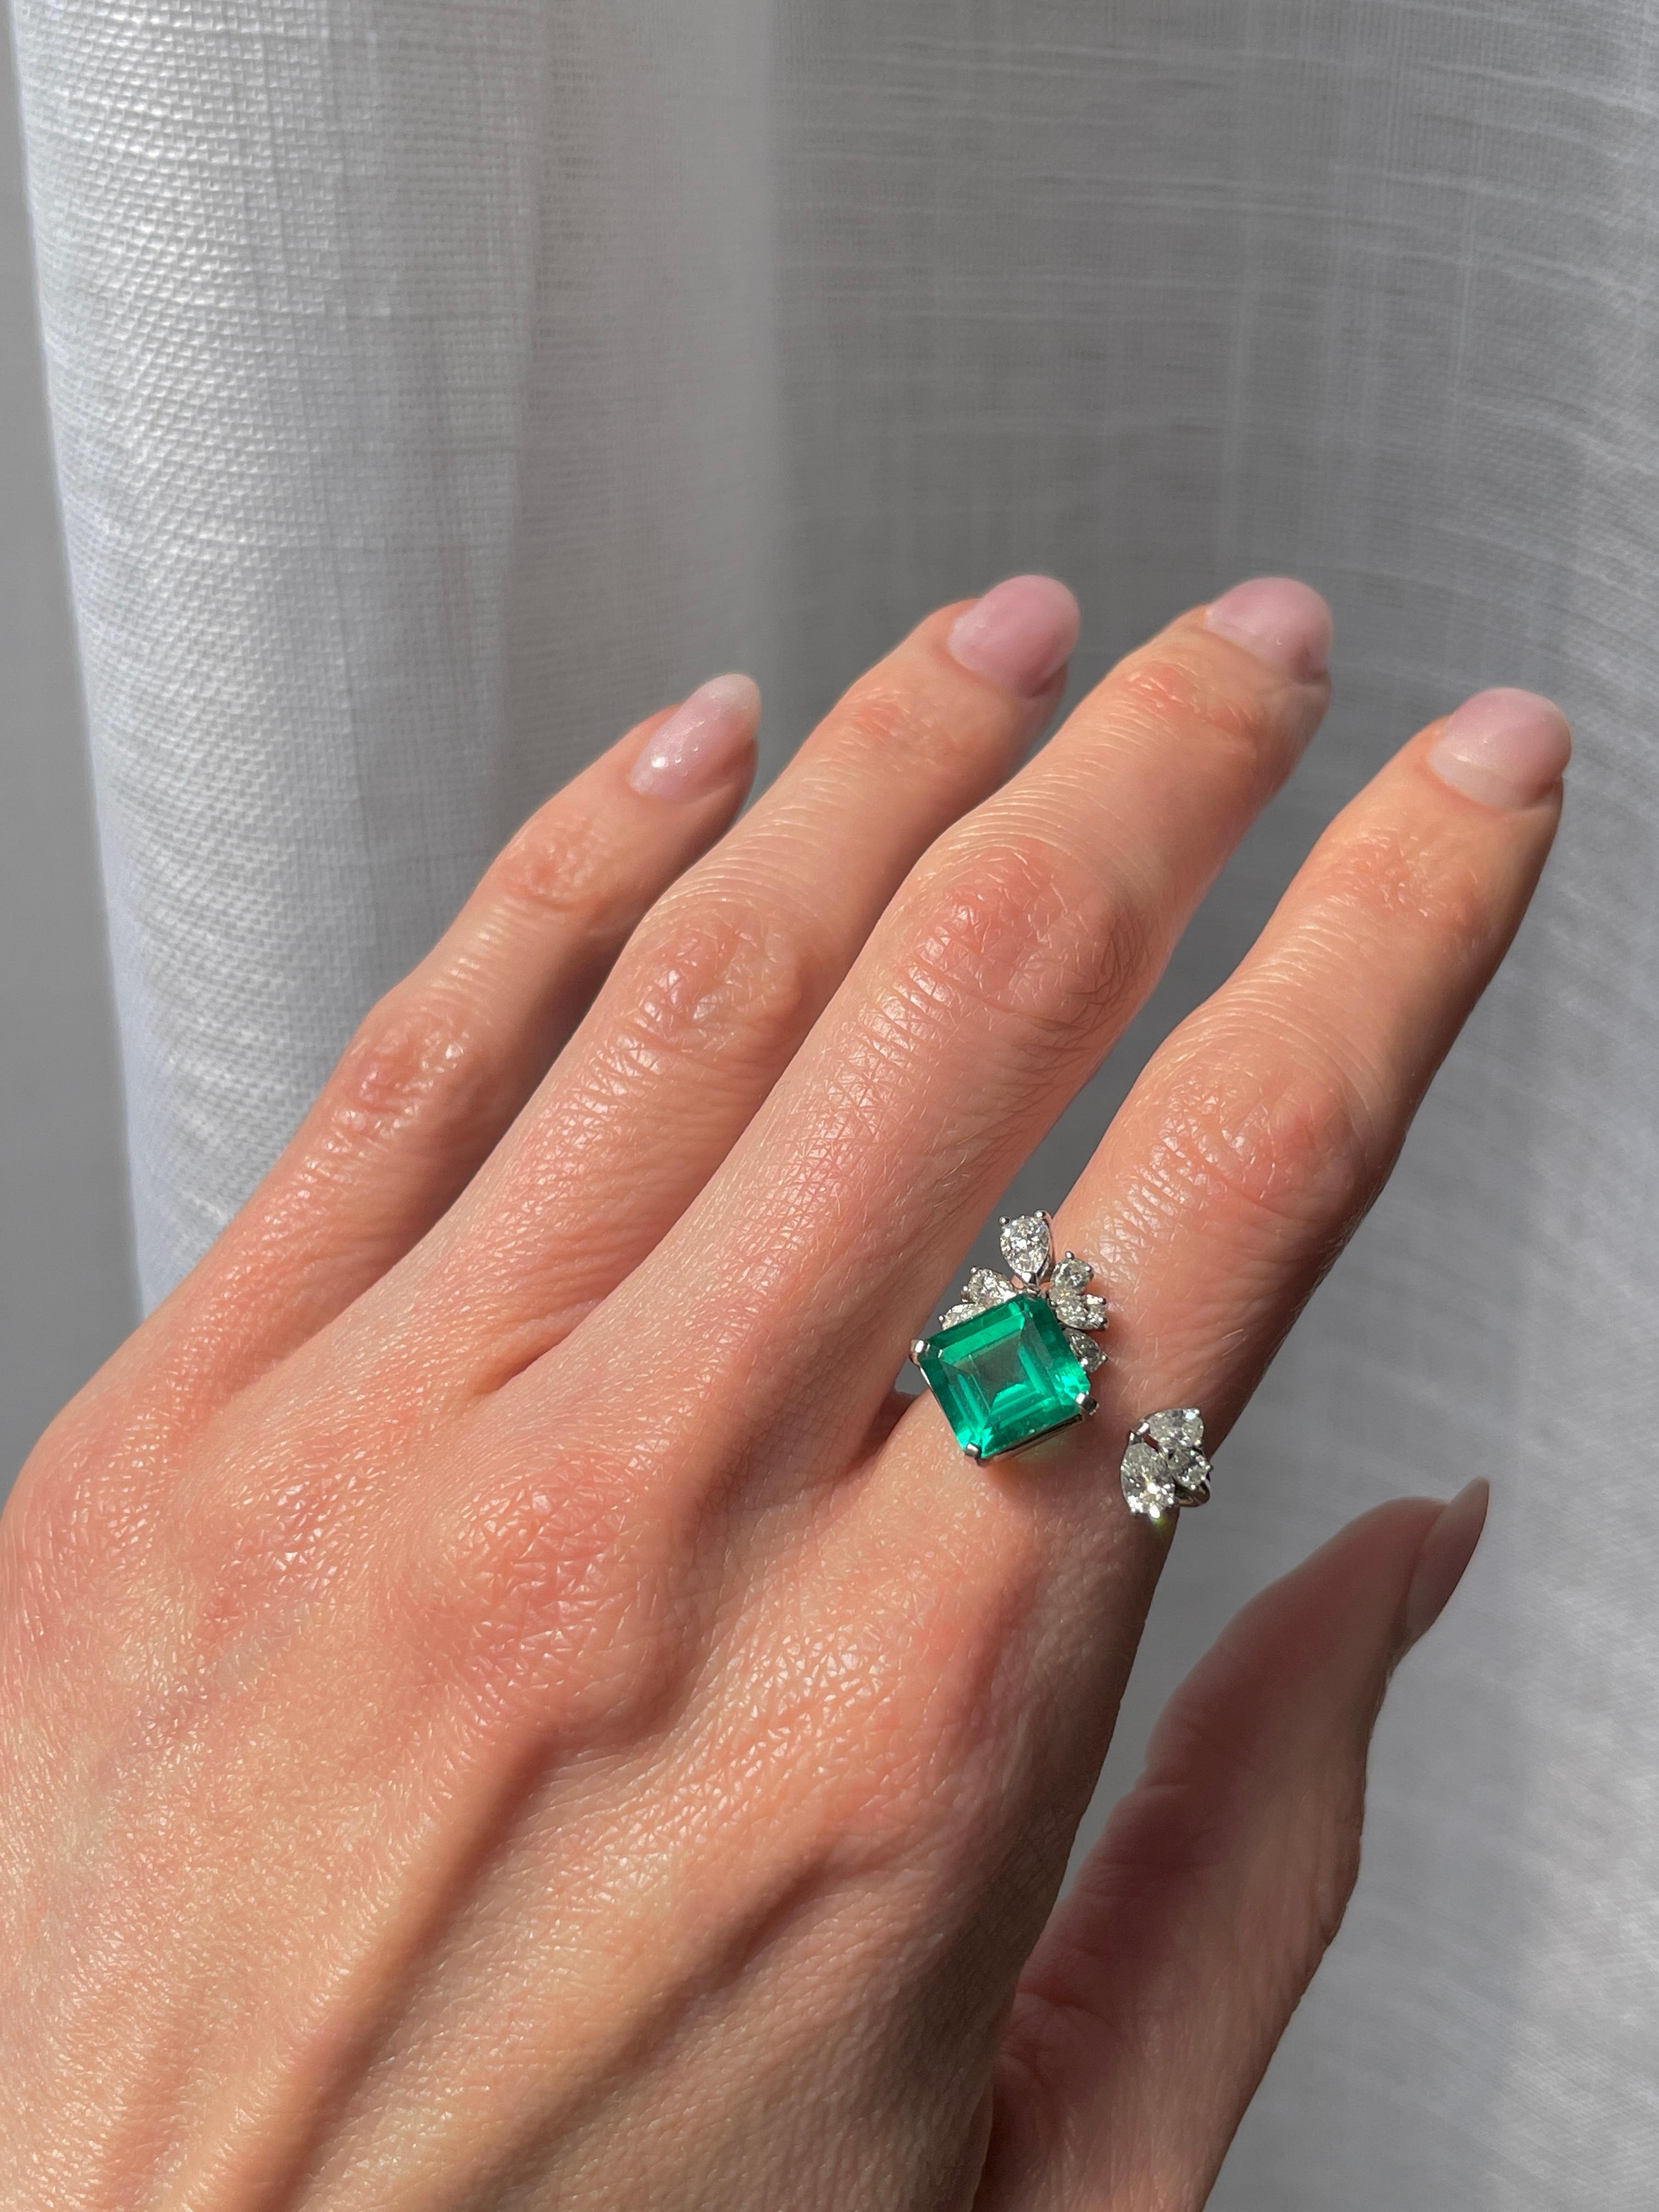 Ein einzigartiges und verspieltes Design, um einen ernsthaften Stein zu präsentieren. Dieser sambische Smaragd von 4,27 Karat ist von AGL mit niedrigem Ölgehalt zertifiziert, augenrein und von besonders leuchtend grüner Farbe.

Die umliegenden